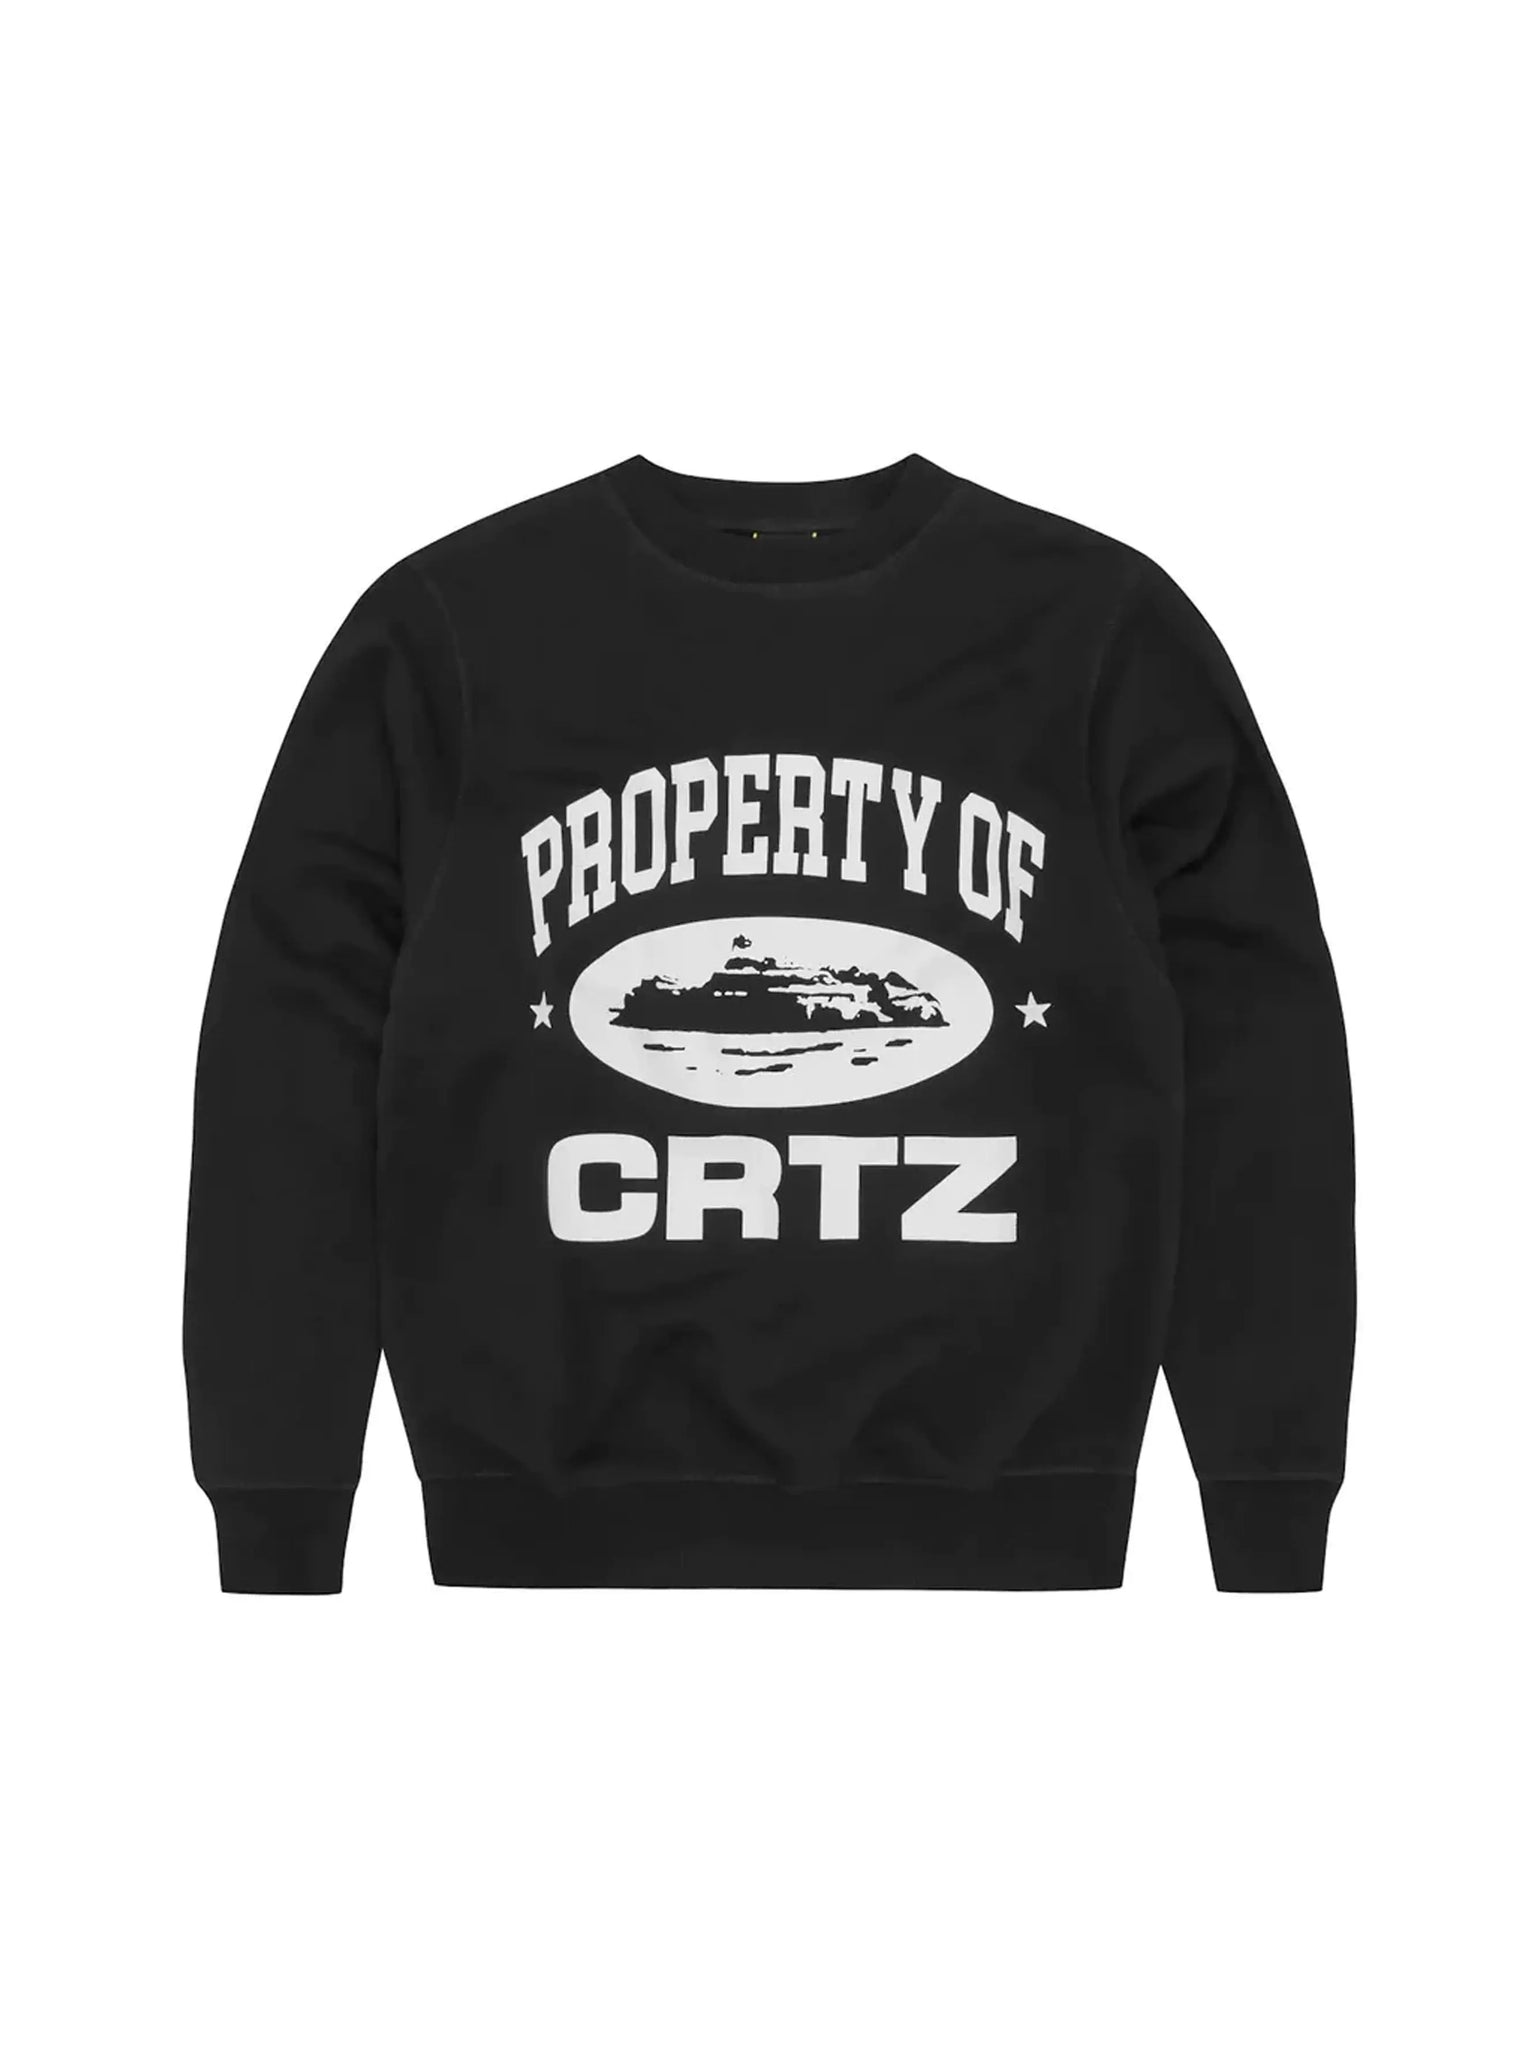 Corteiz P.O.C Sweatshirt Black in Auckland, New Zealand - Shop name